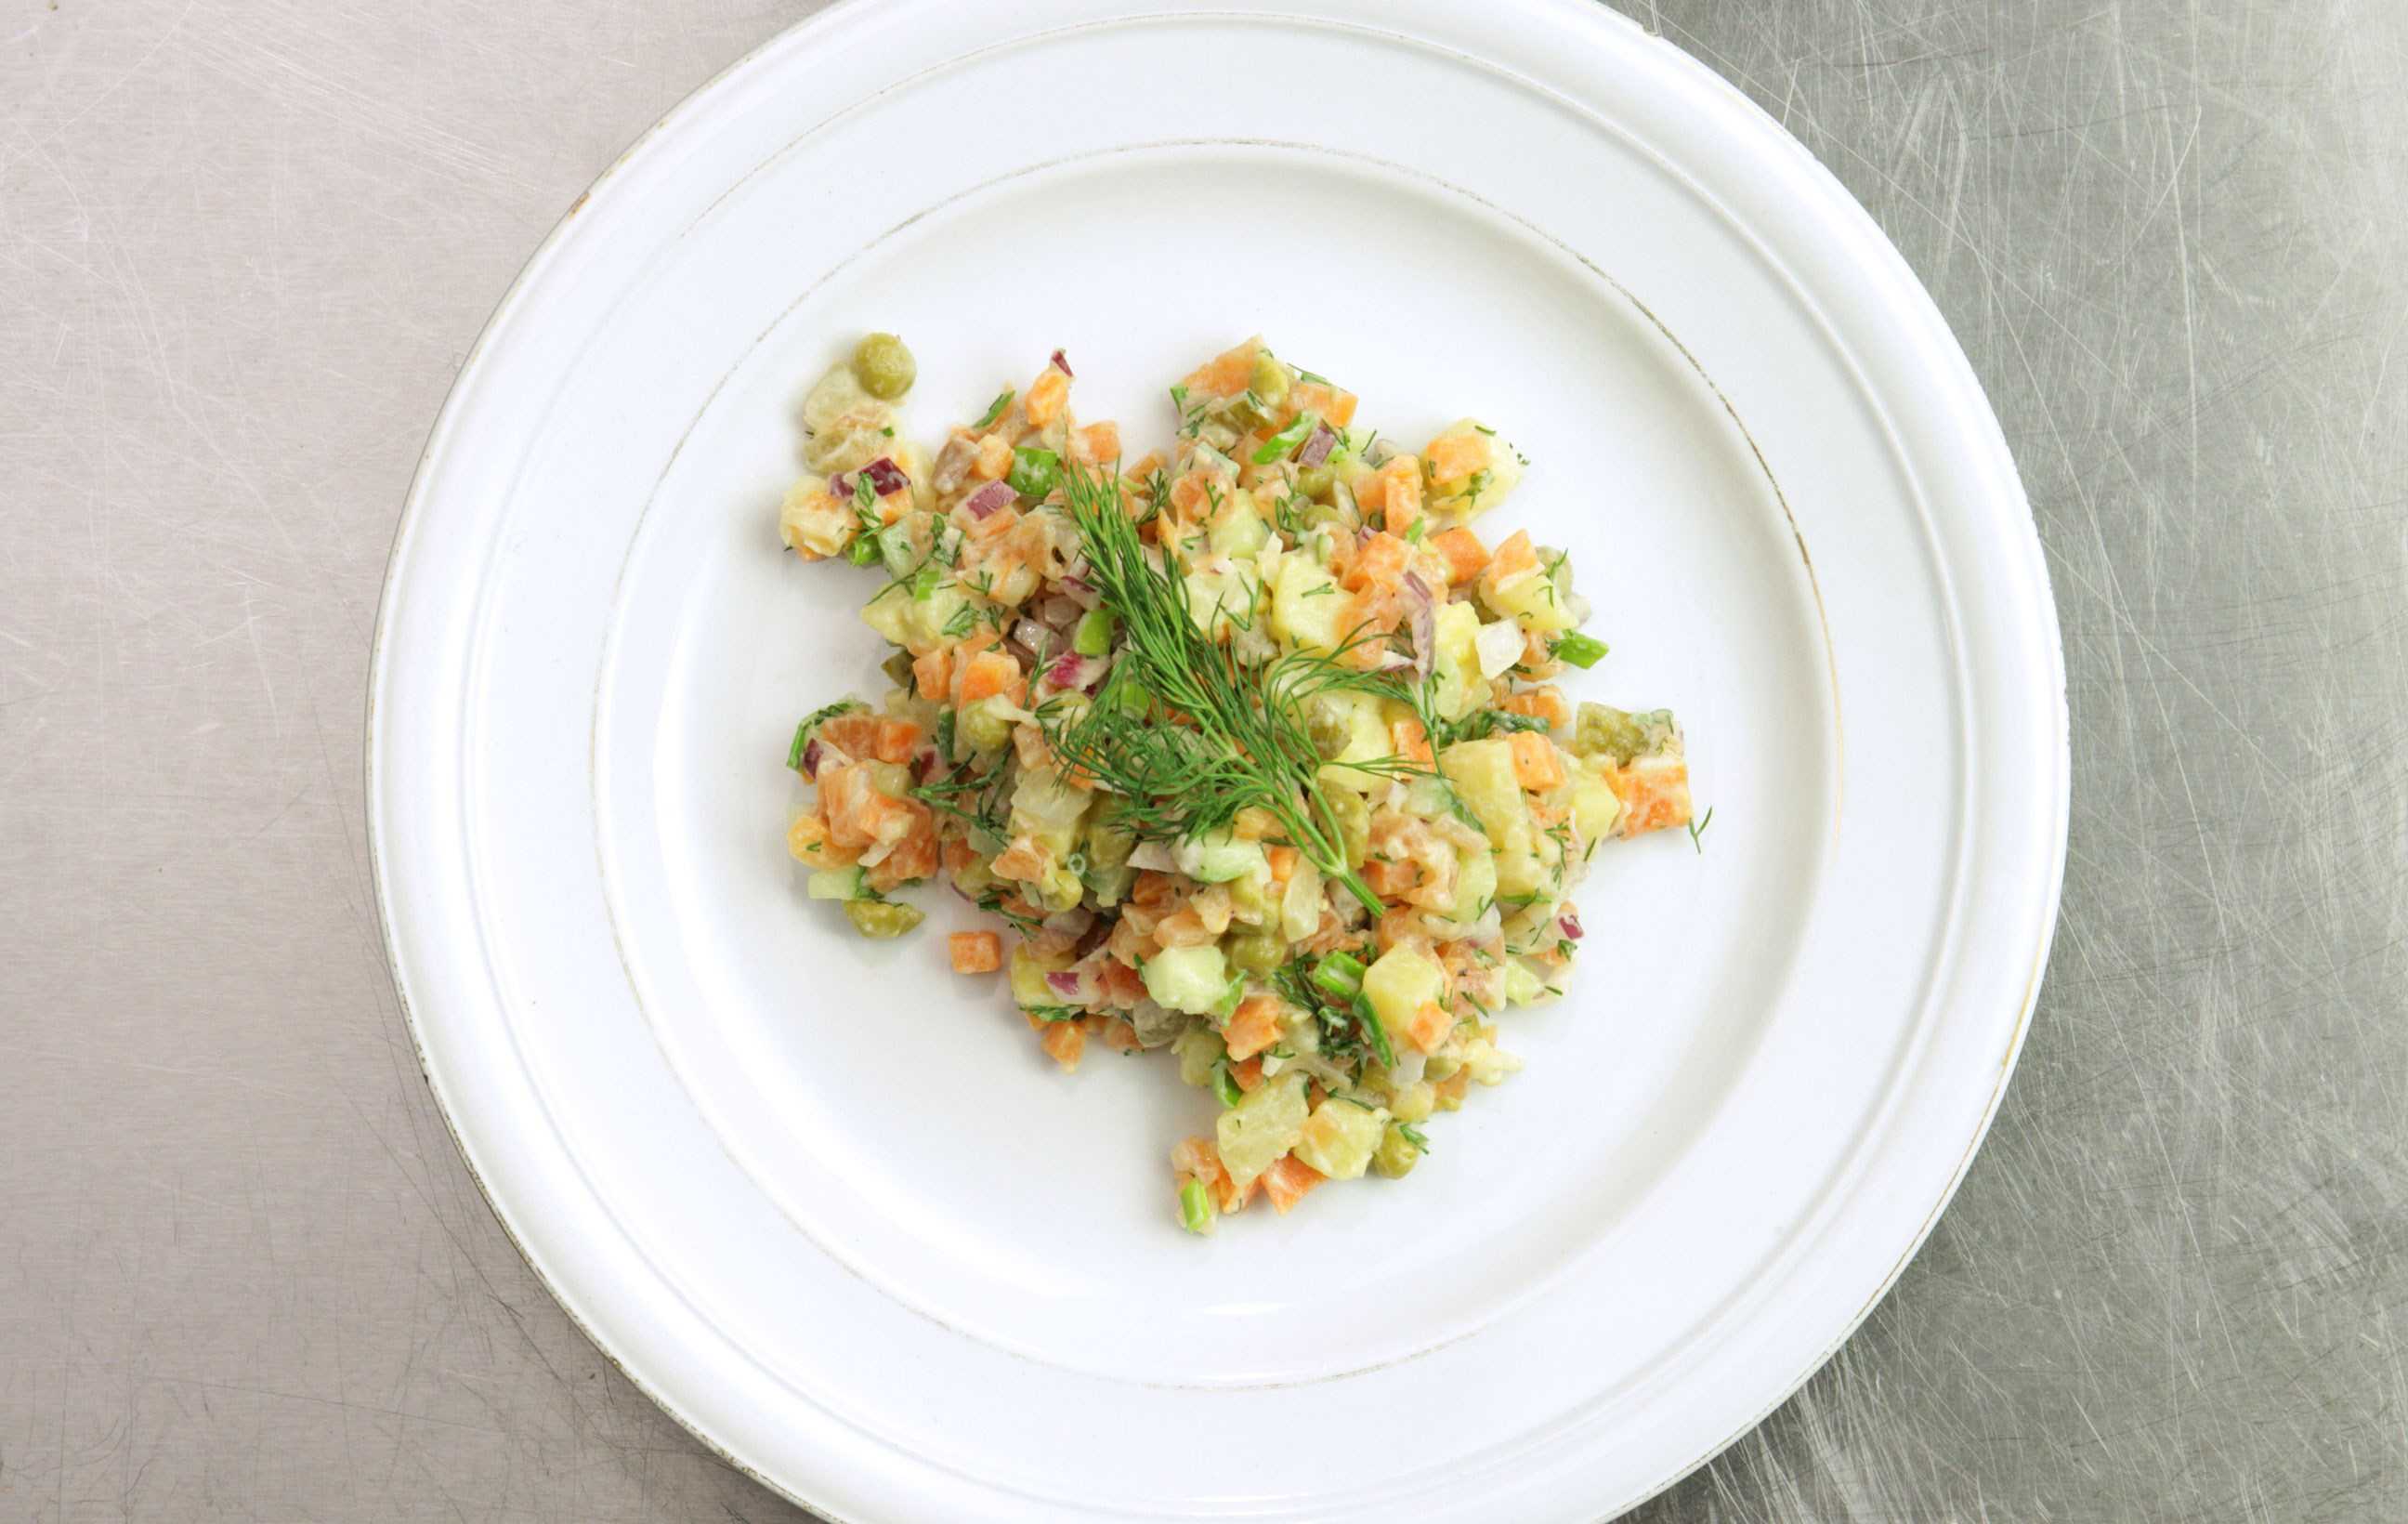 Салат с селедкой. 13 очень вкусных рецептов на праздник и каждый день